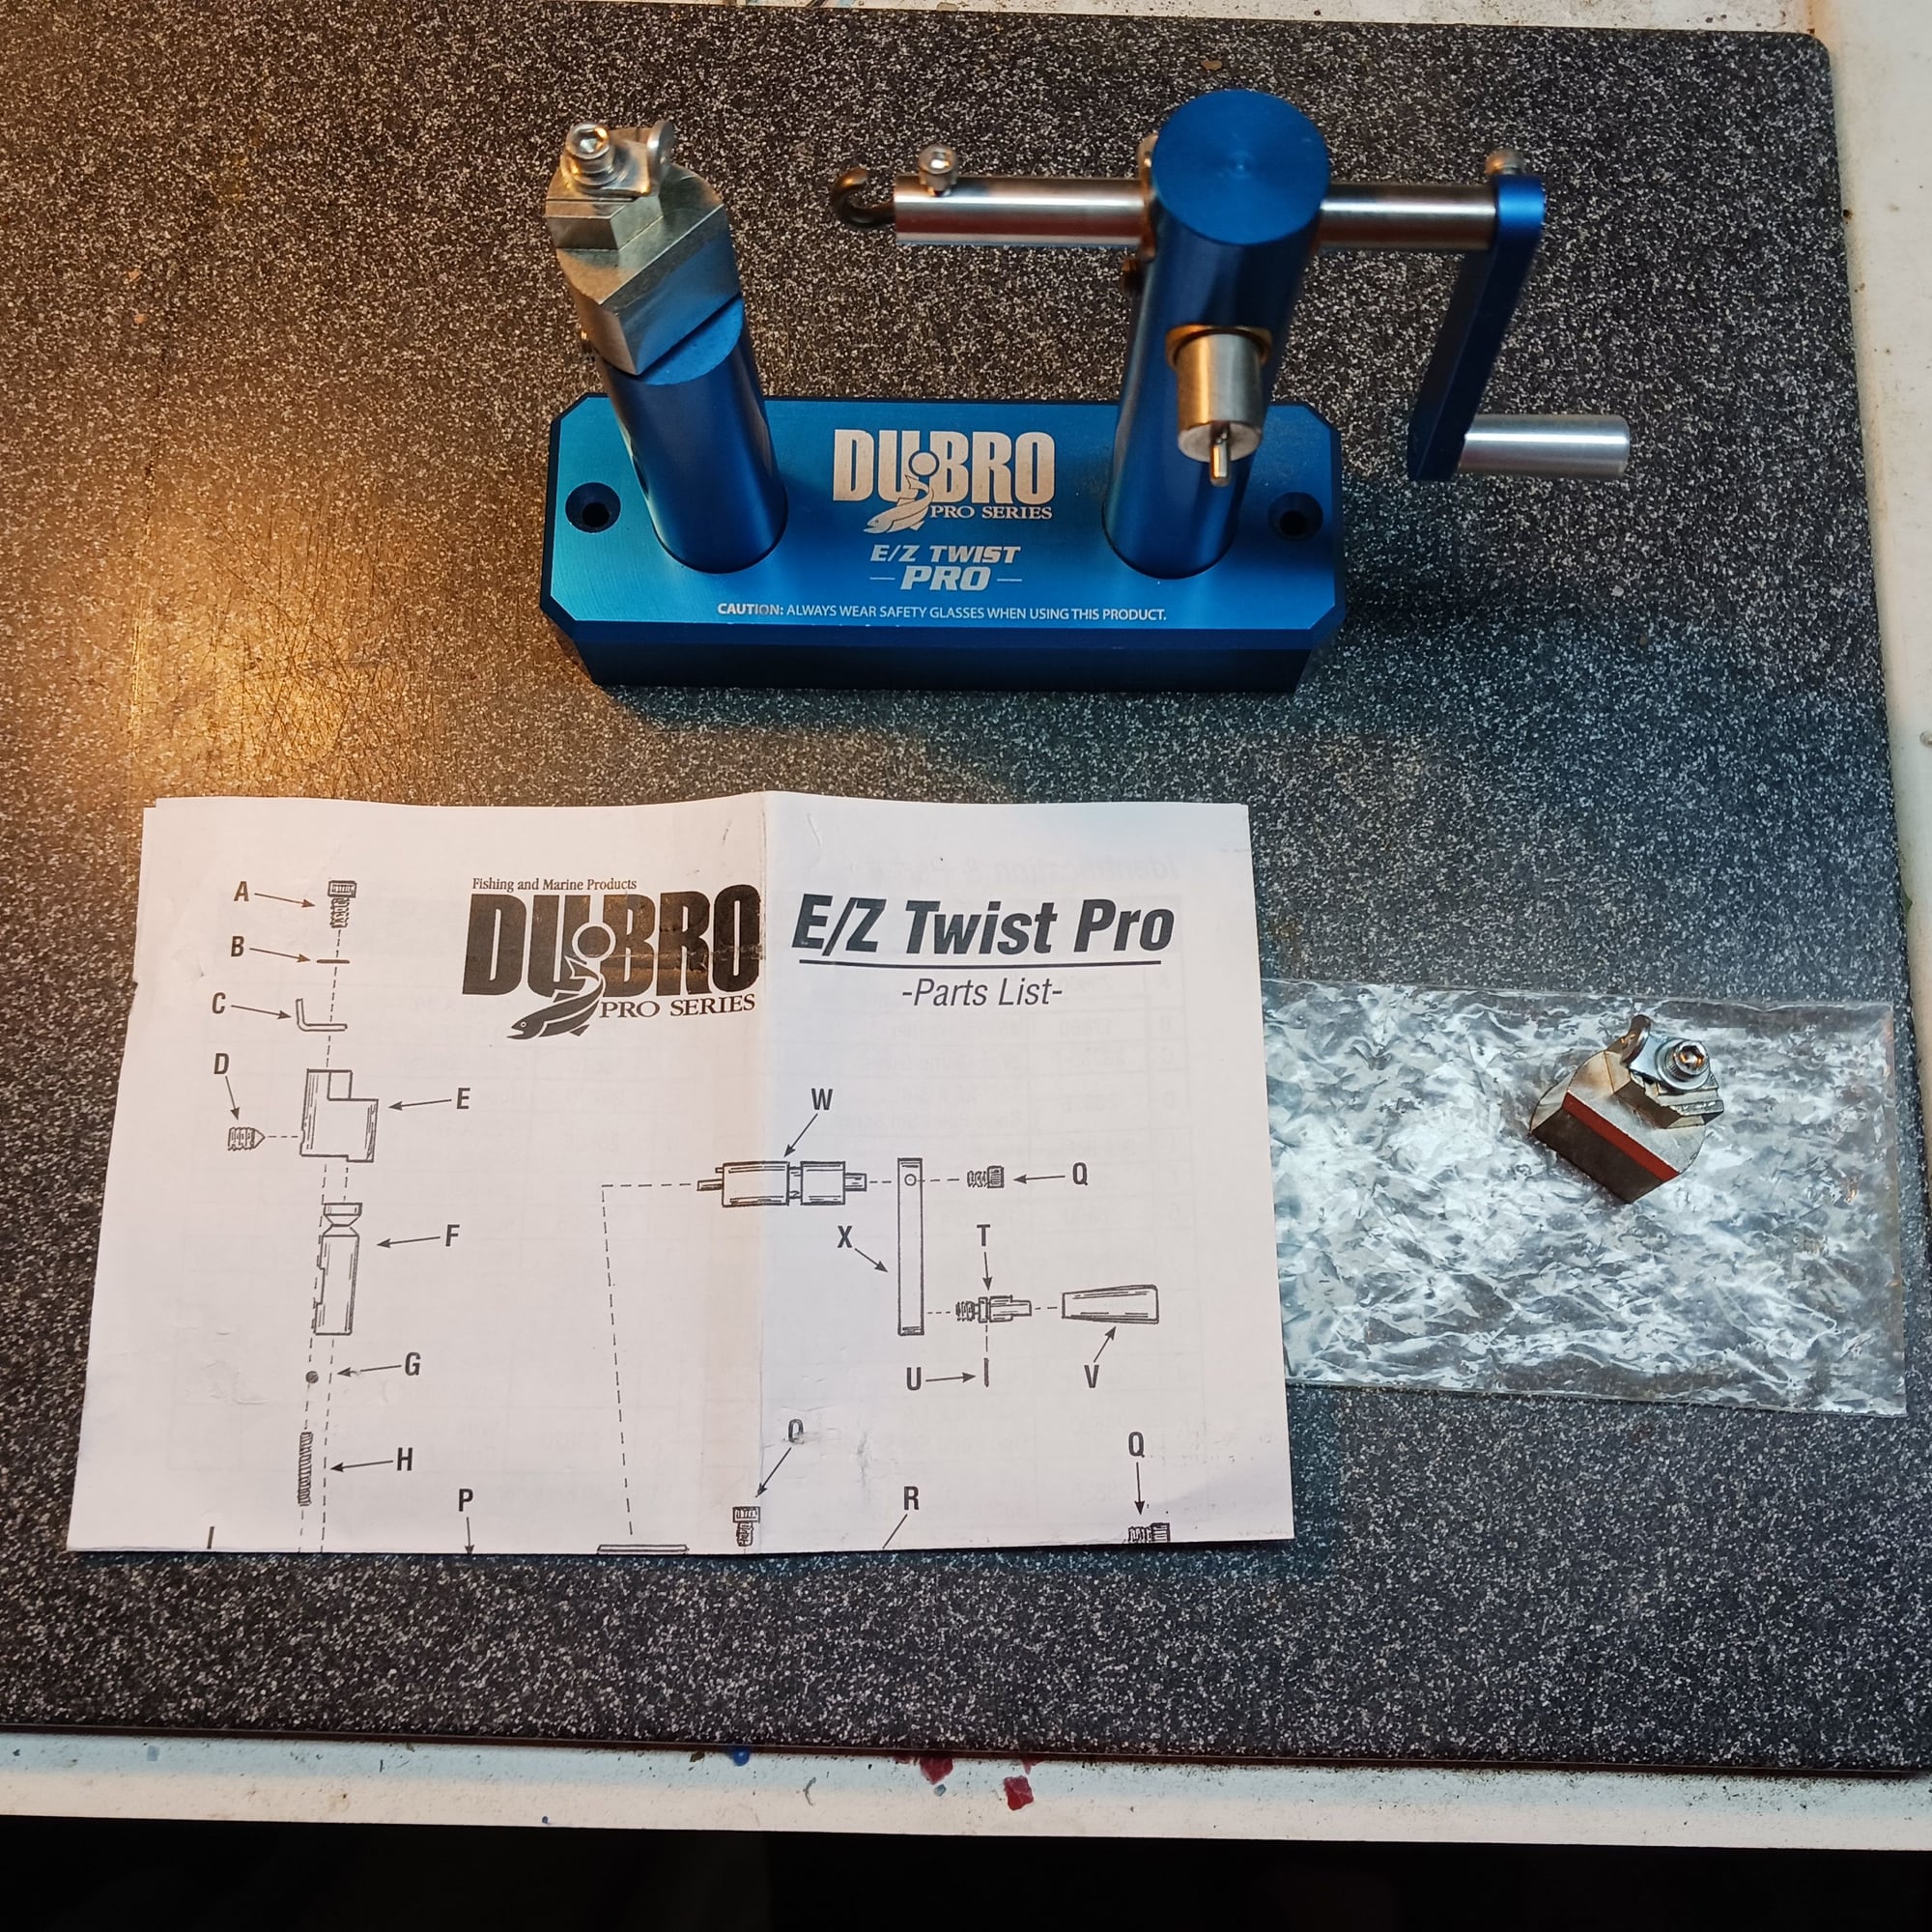 DU-BRO Fishing E/Z Twist Pro Deluxe Leader Tool, 5-22 Gauge